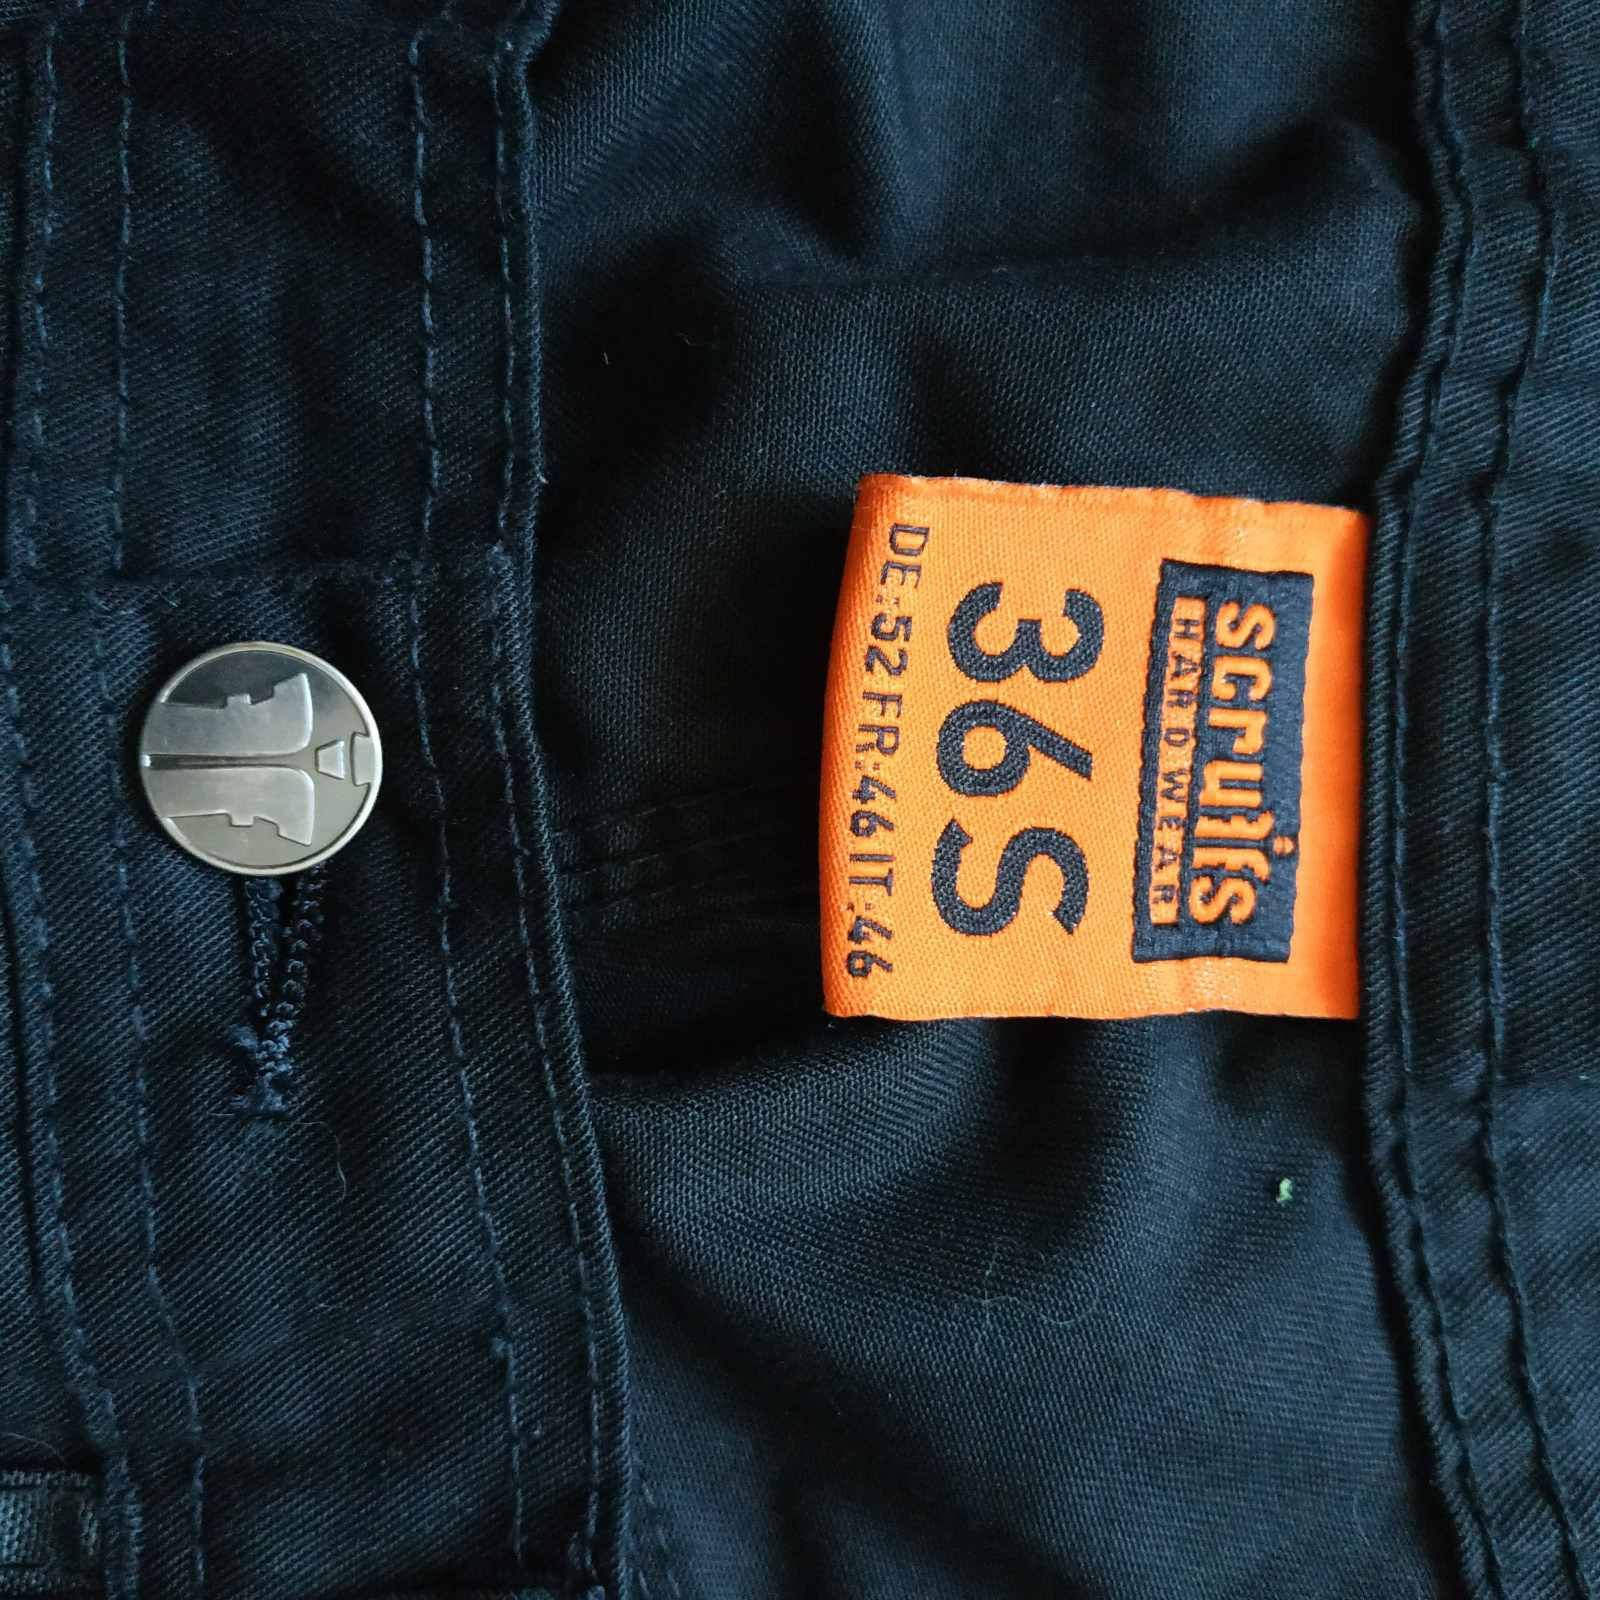 Scruffs hard wear S-150 штаны рабочие монтажные размер 36S, состояние